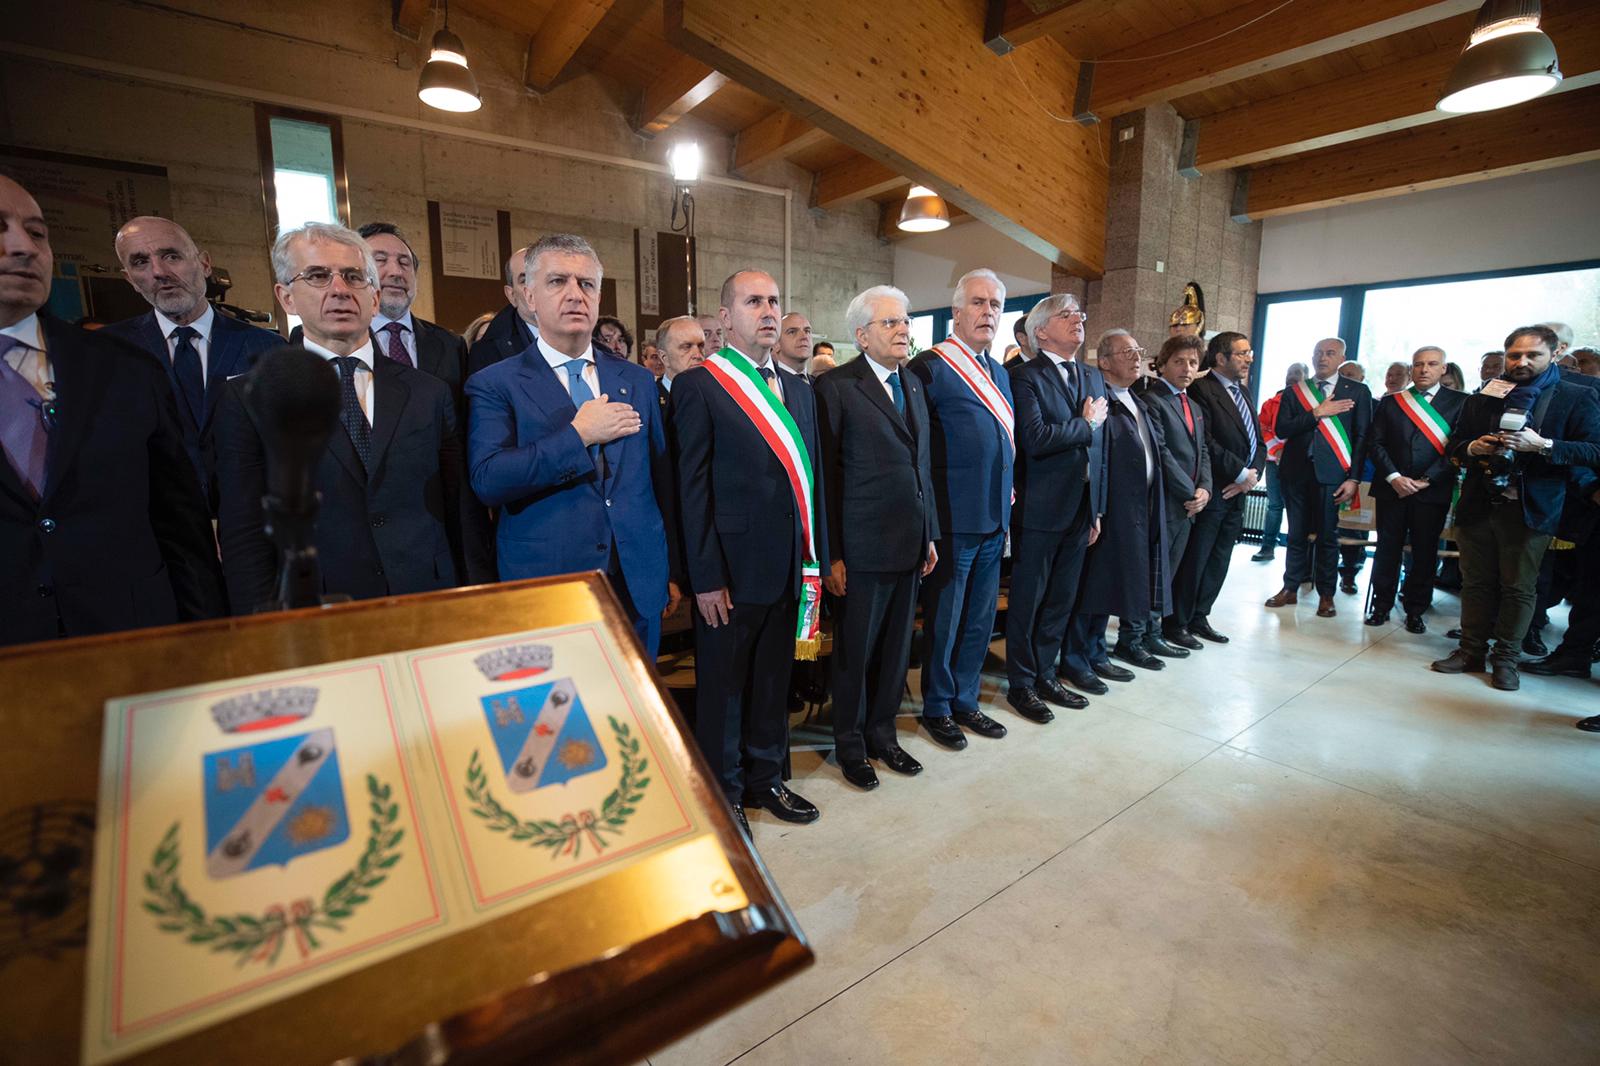 Stragi naziste: presidente Mattarella in visita a Sant’Anna 